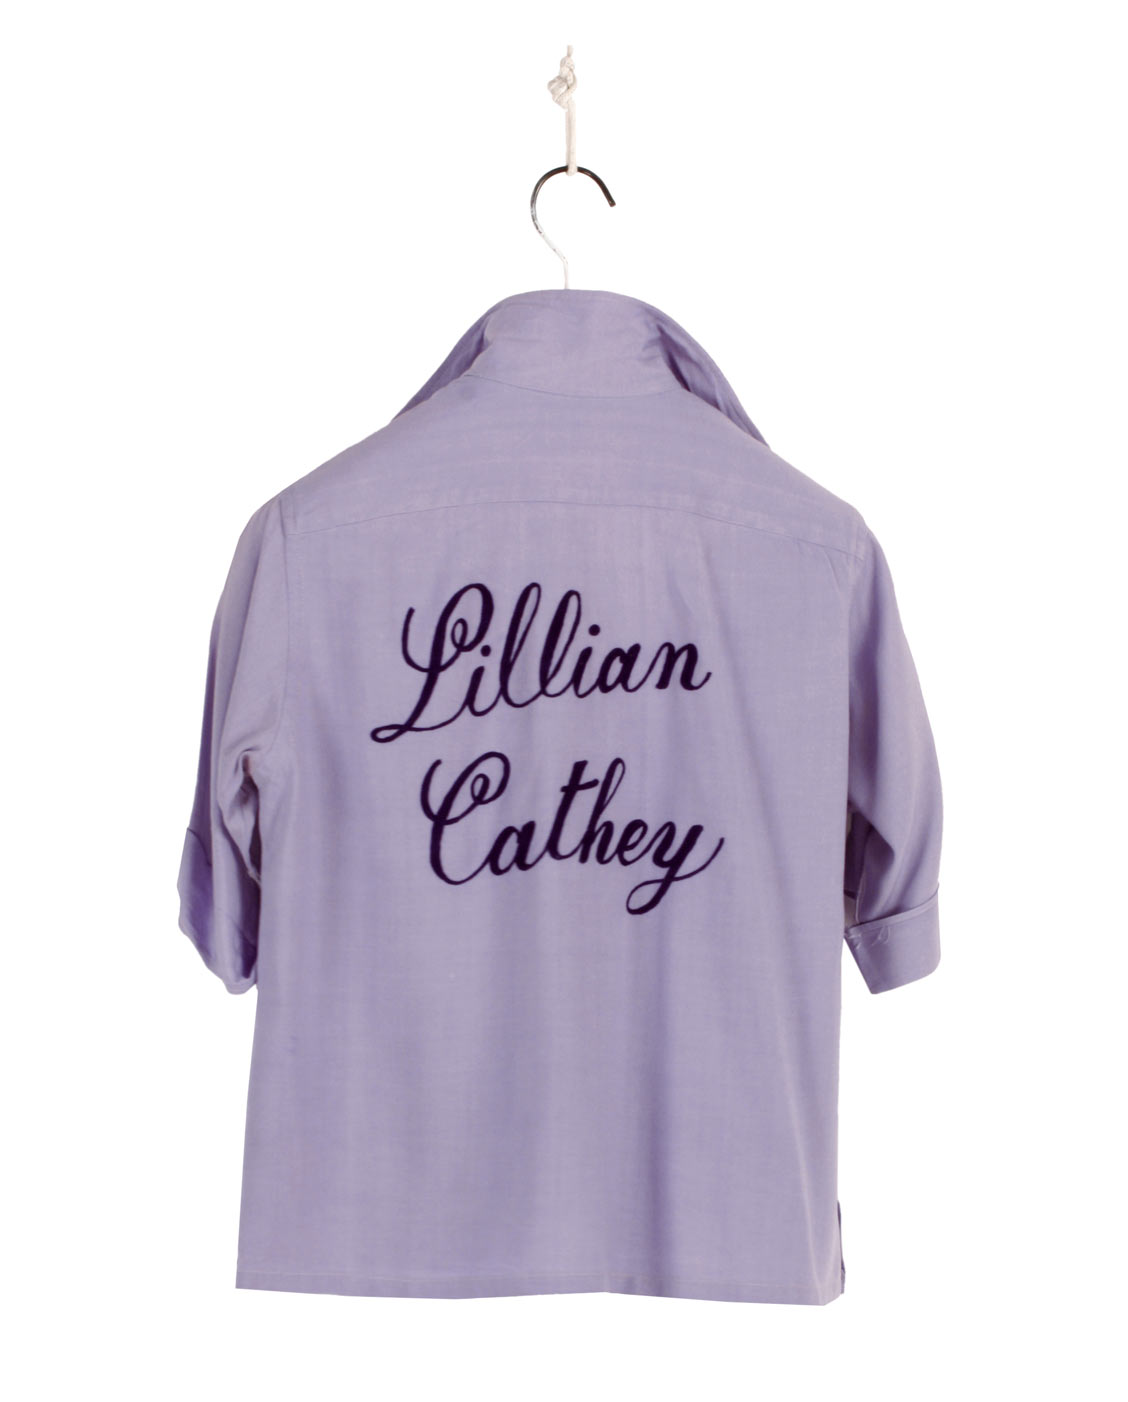 Hilton woman bowling shirt 50s/60s